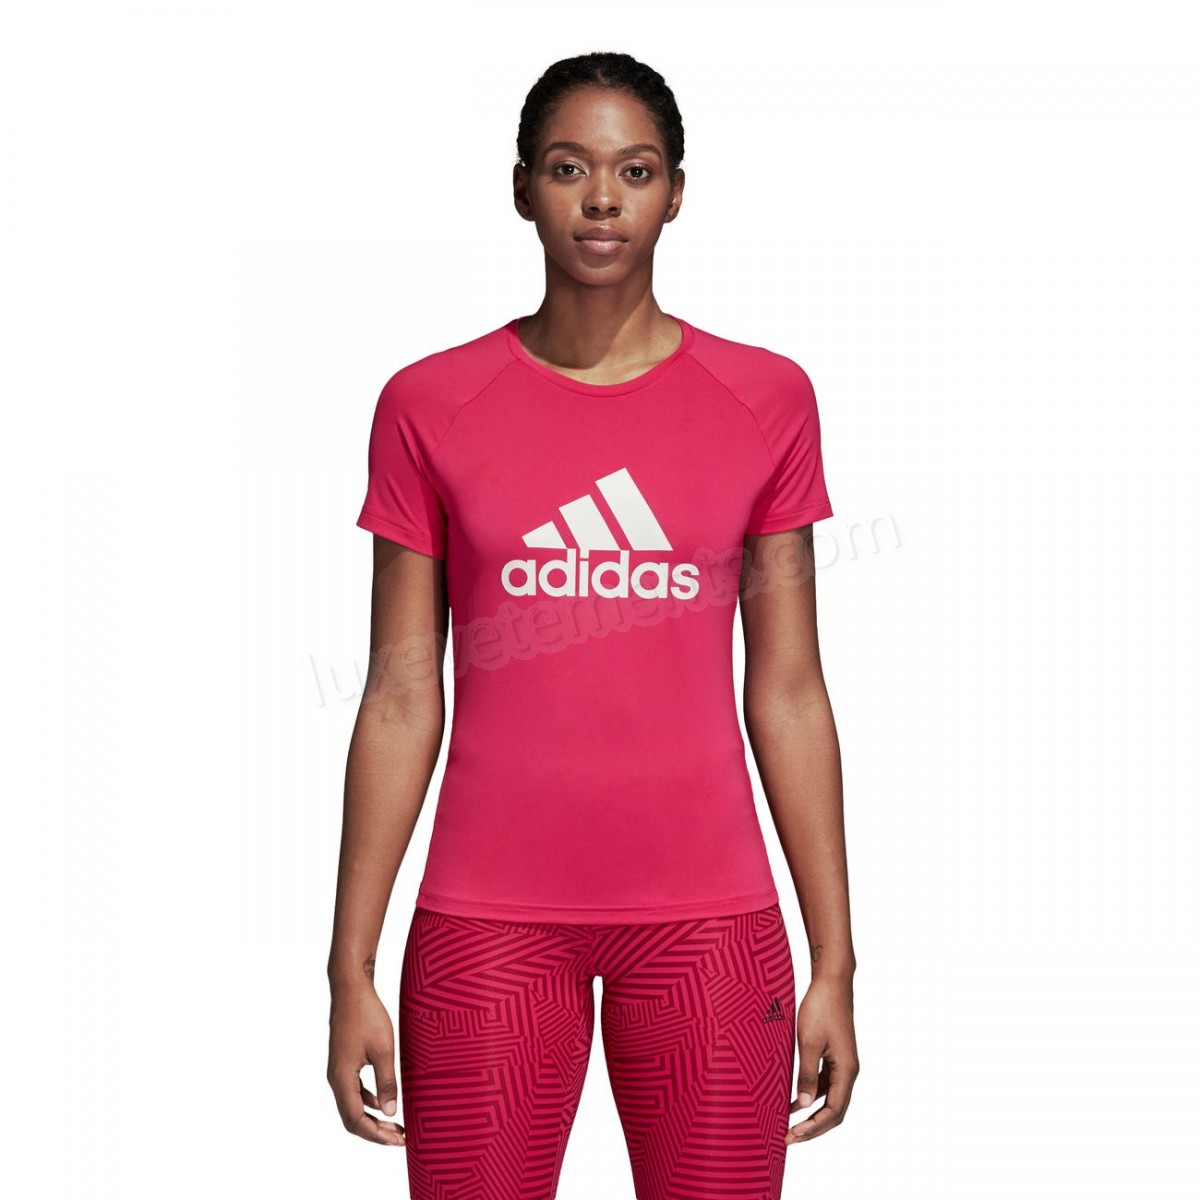 Adidas-Fitness femme ADIDAS Adidas Design 2 Move Logo Vente en ligne - -13